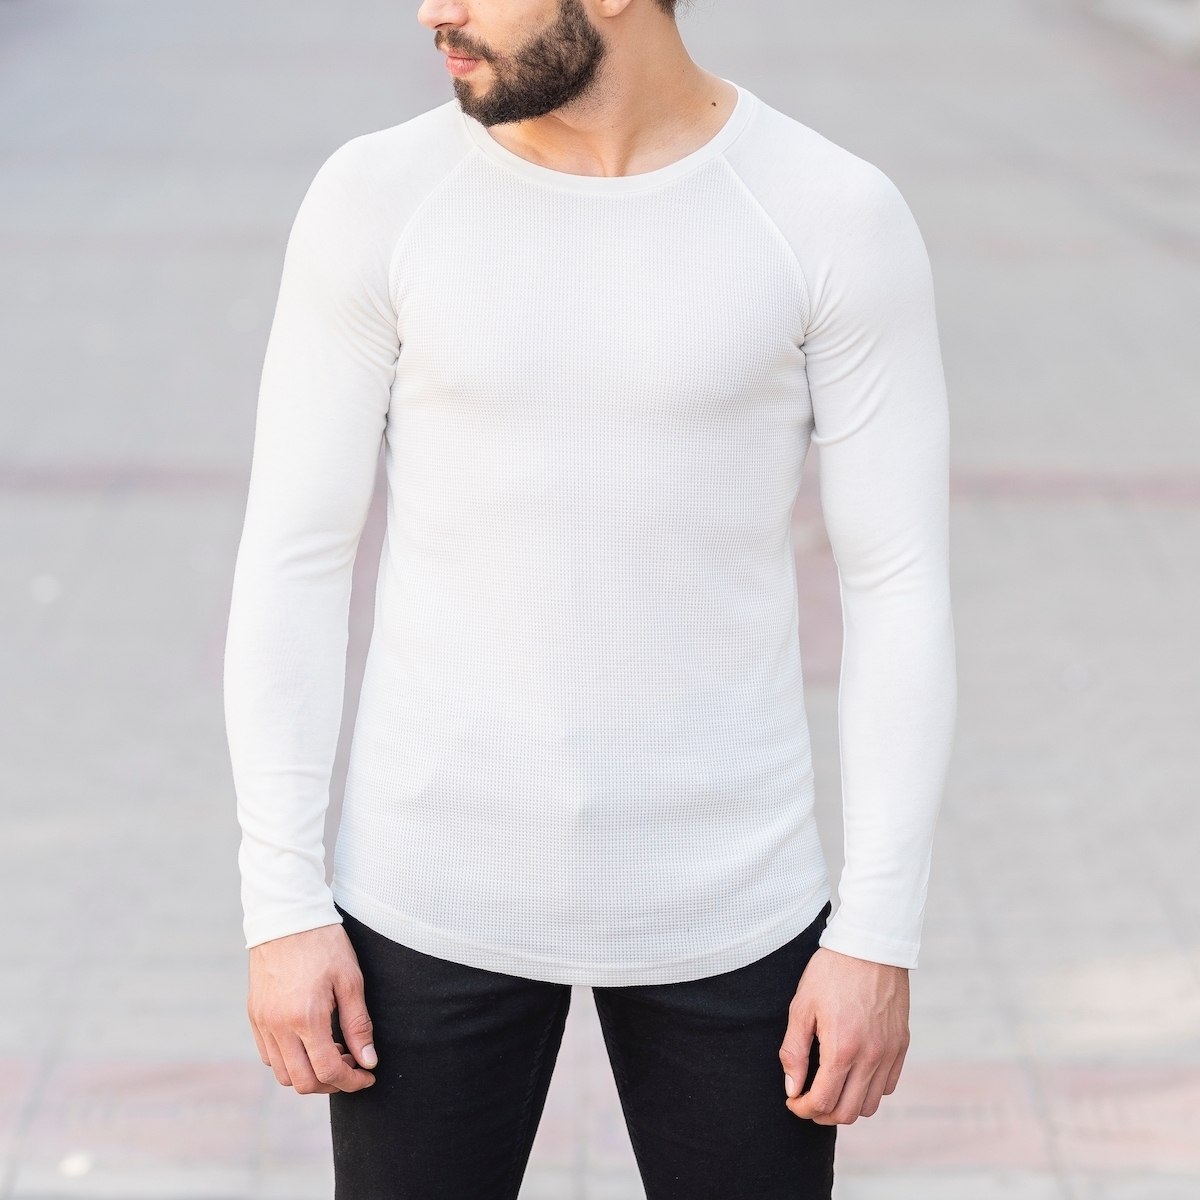 Dotwork Sweatshirt In White - 1